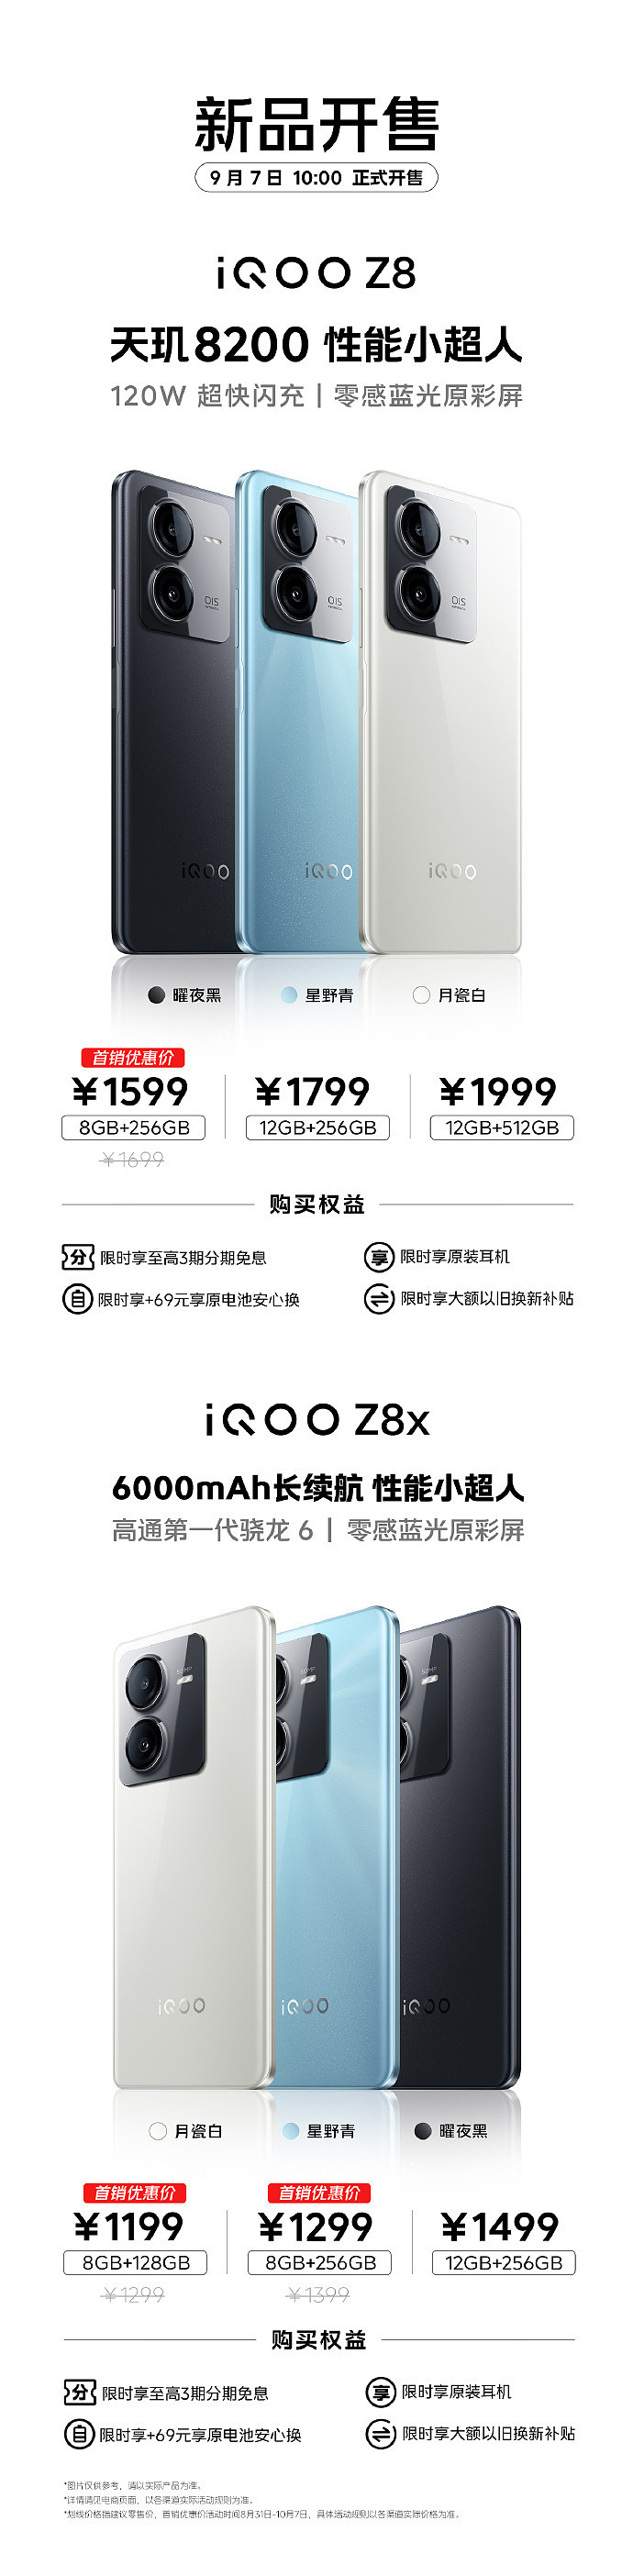 iQOO Z8 / Z8x 系列手机今日开售，首销 1599/1199 元起 - 1